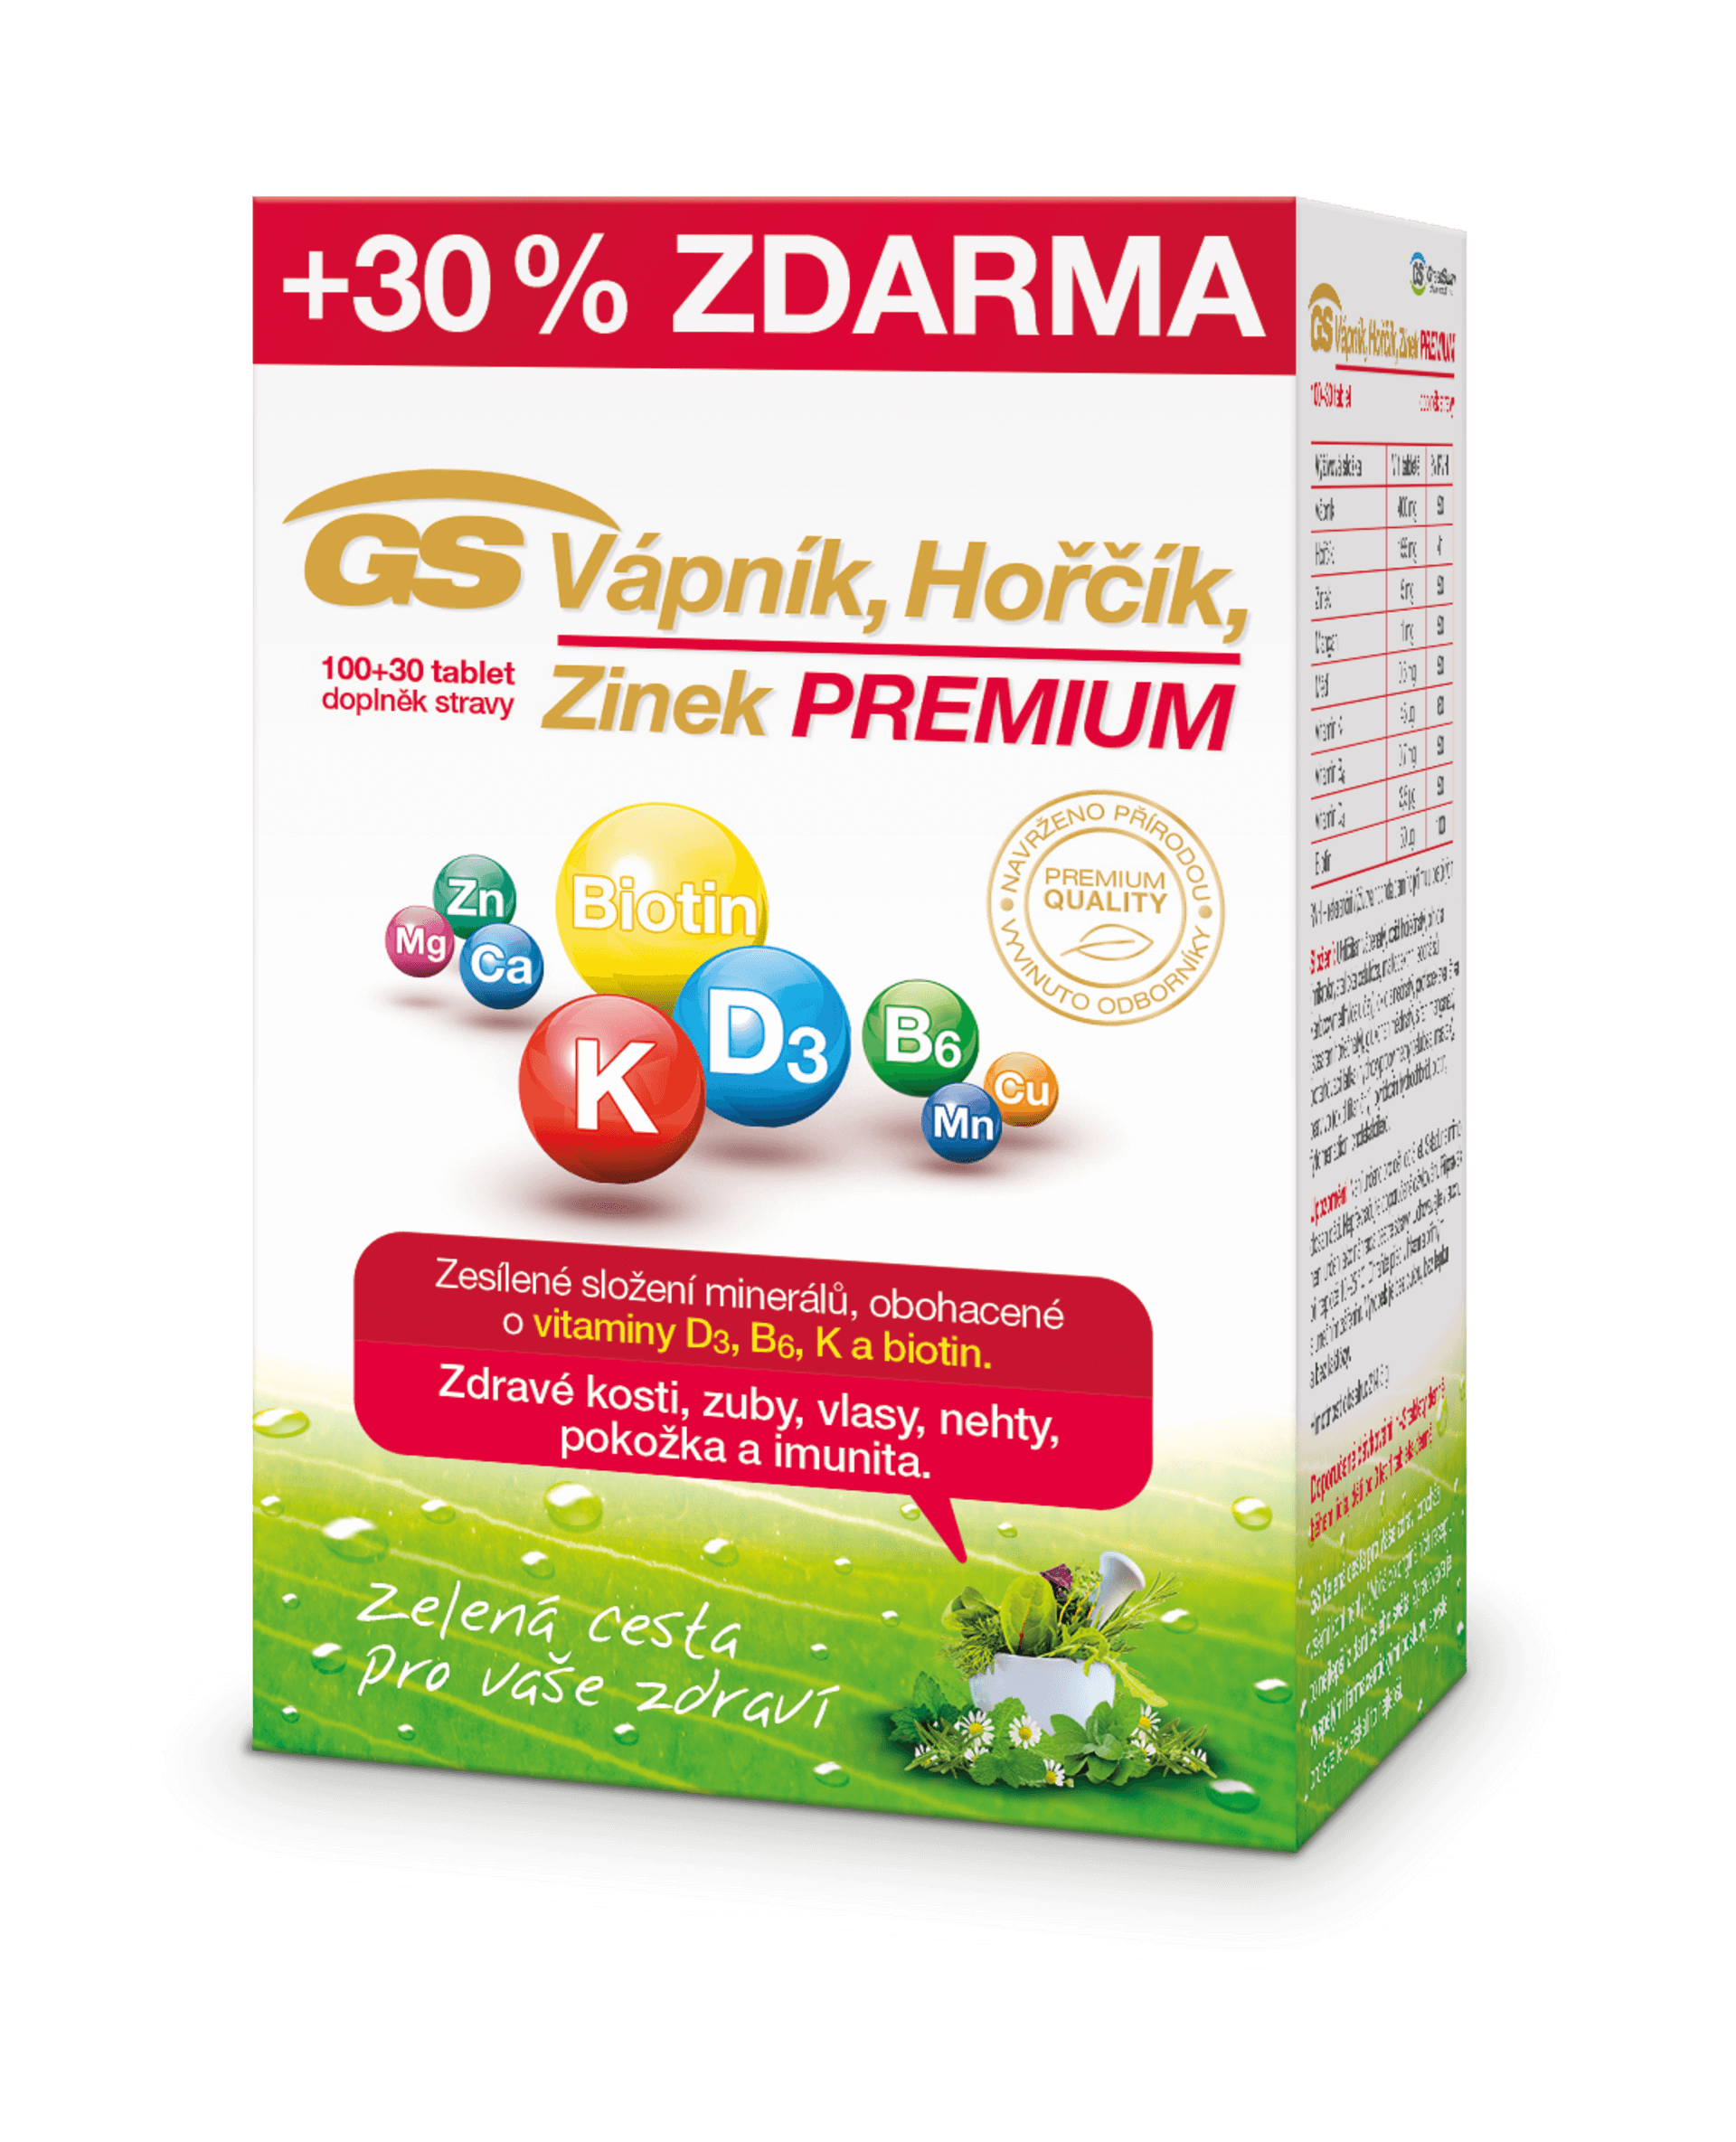 GS Vápnik horčík zinok Premium 100+30 tabliet